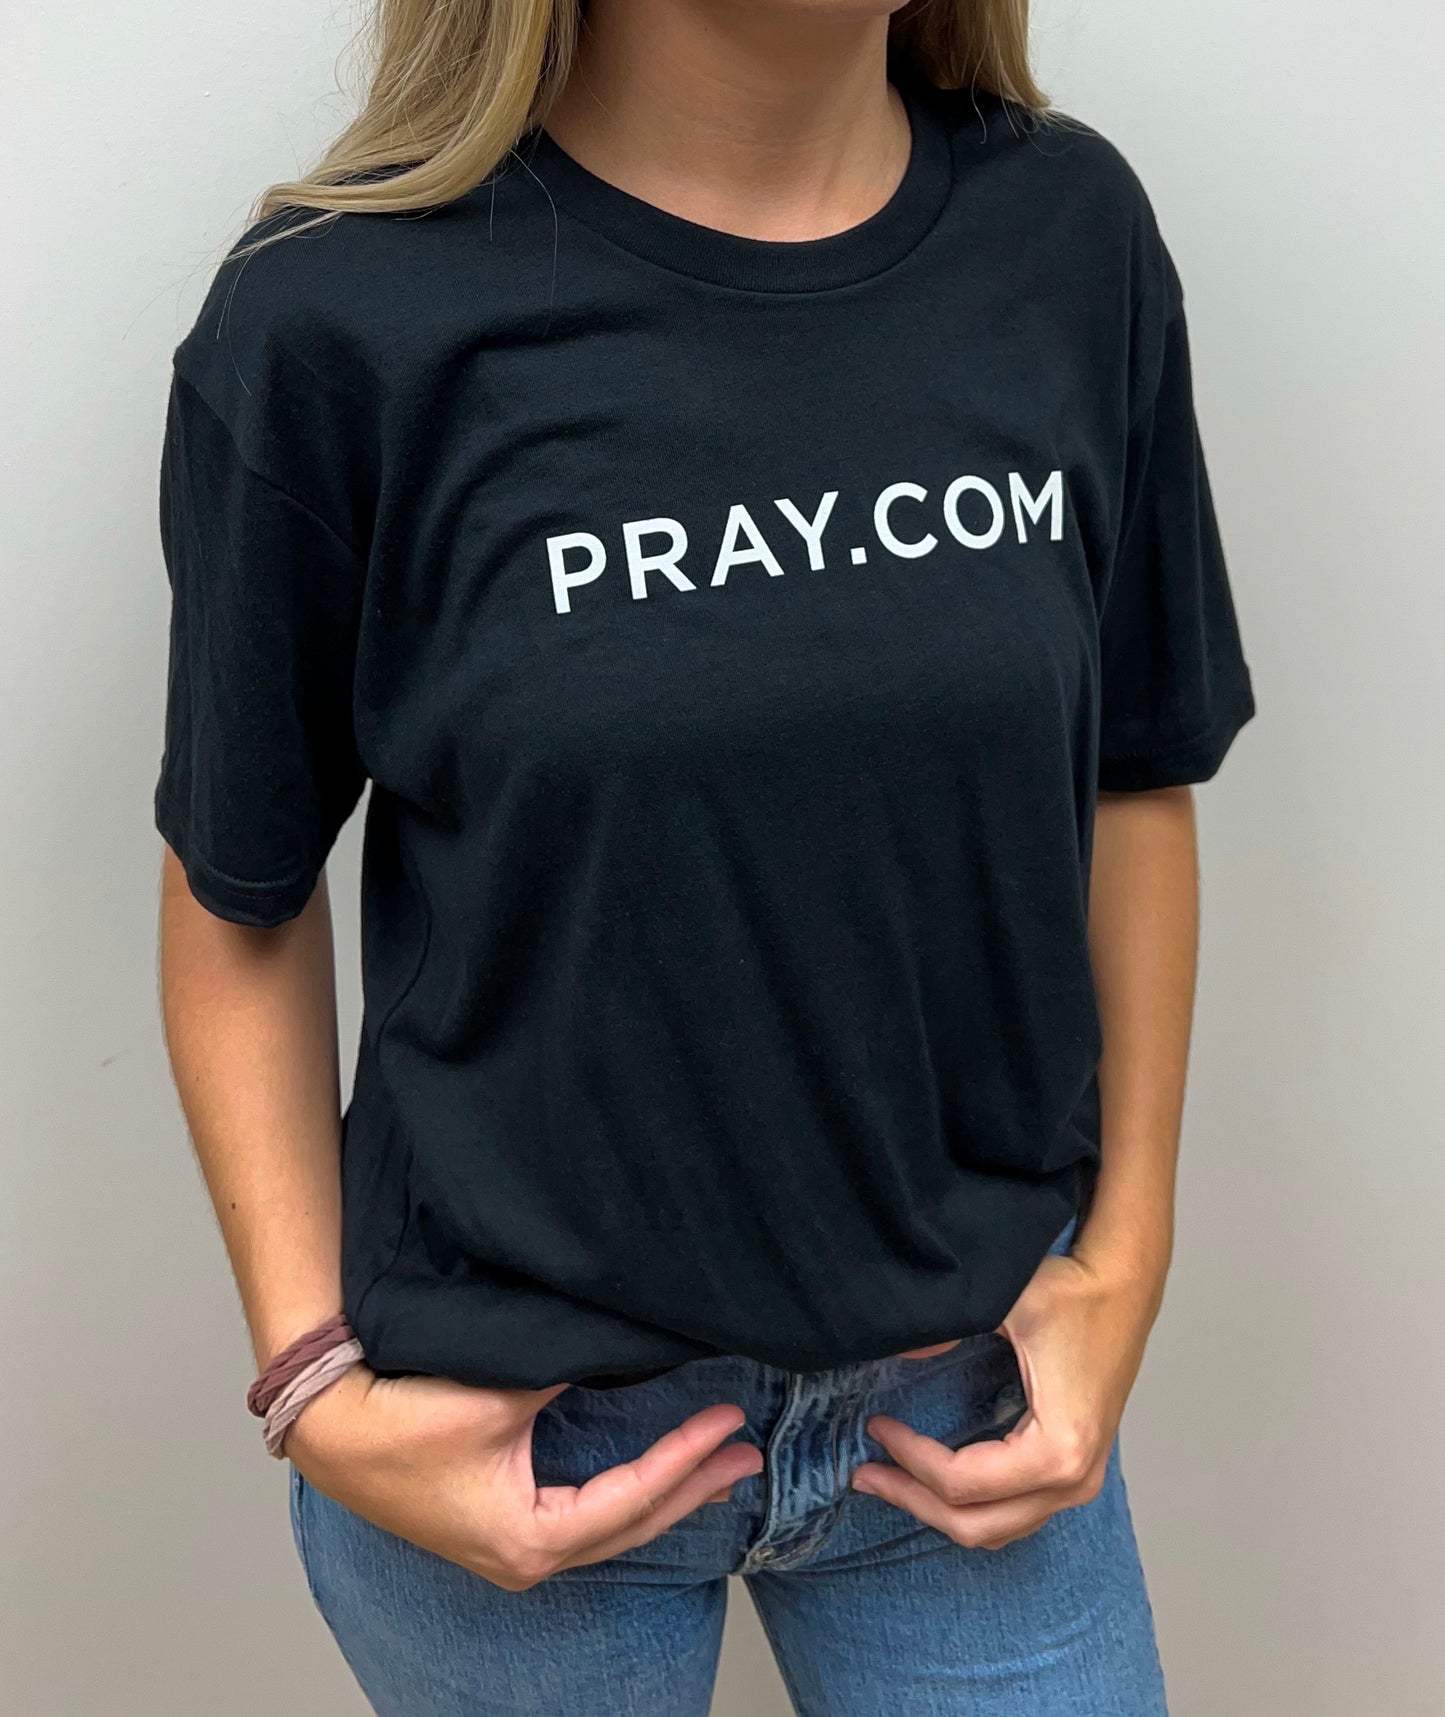 PRAY.COM Premium Logo Shirt